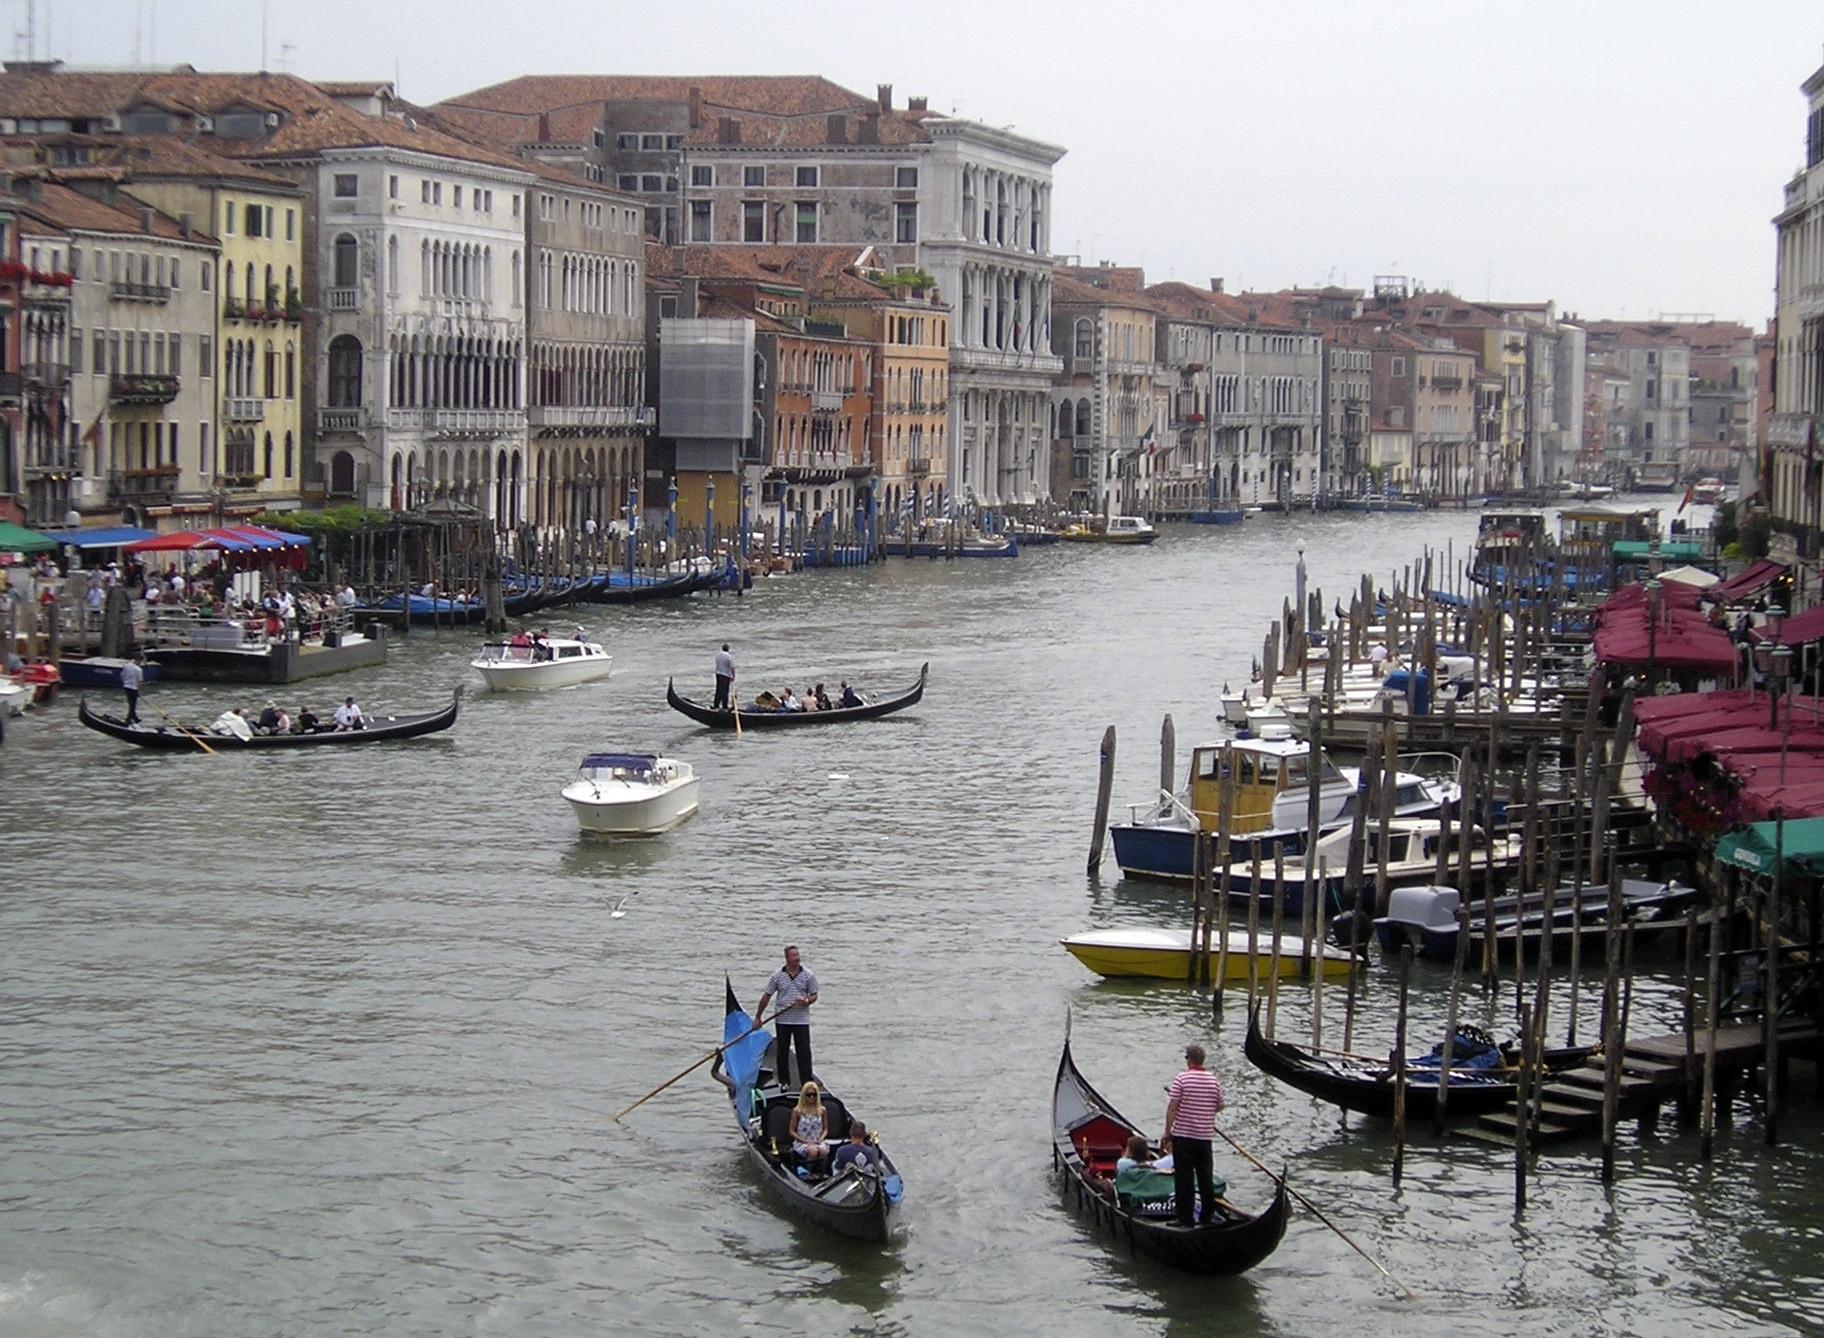 Nu kostar det att besöka Venedig under dagen. Alla är inte nöjda med beslutet och boende samt föreningar i staden har valt att protestera mot införandet. Arkivbild.